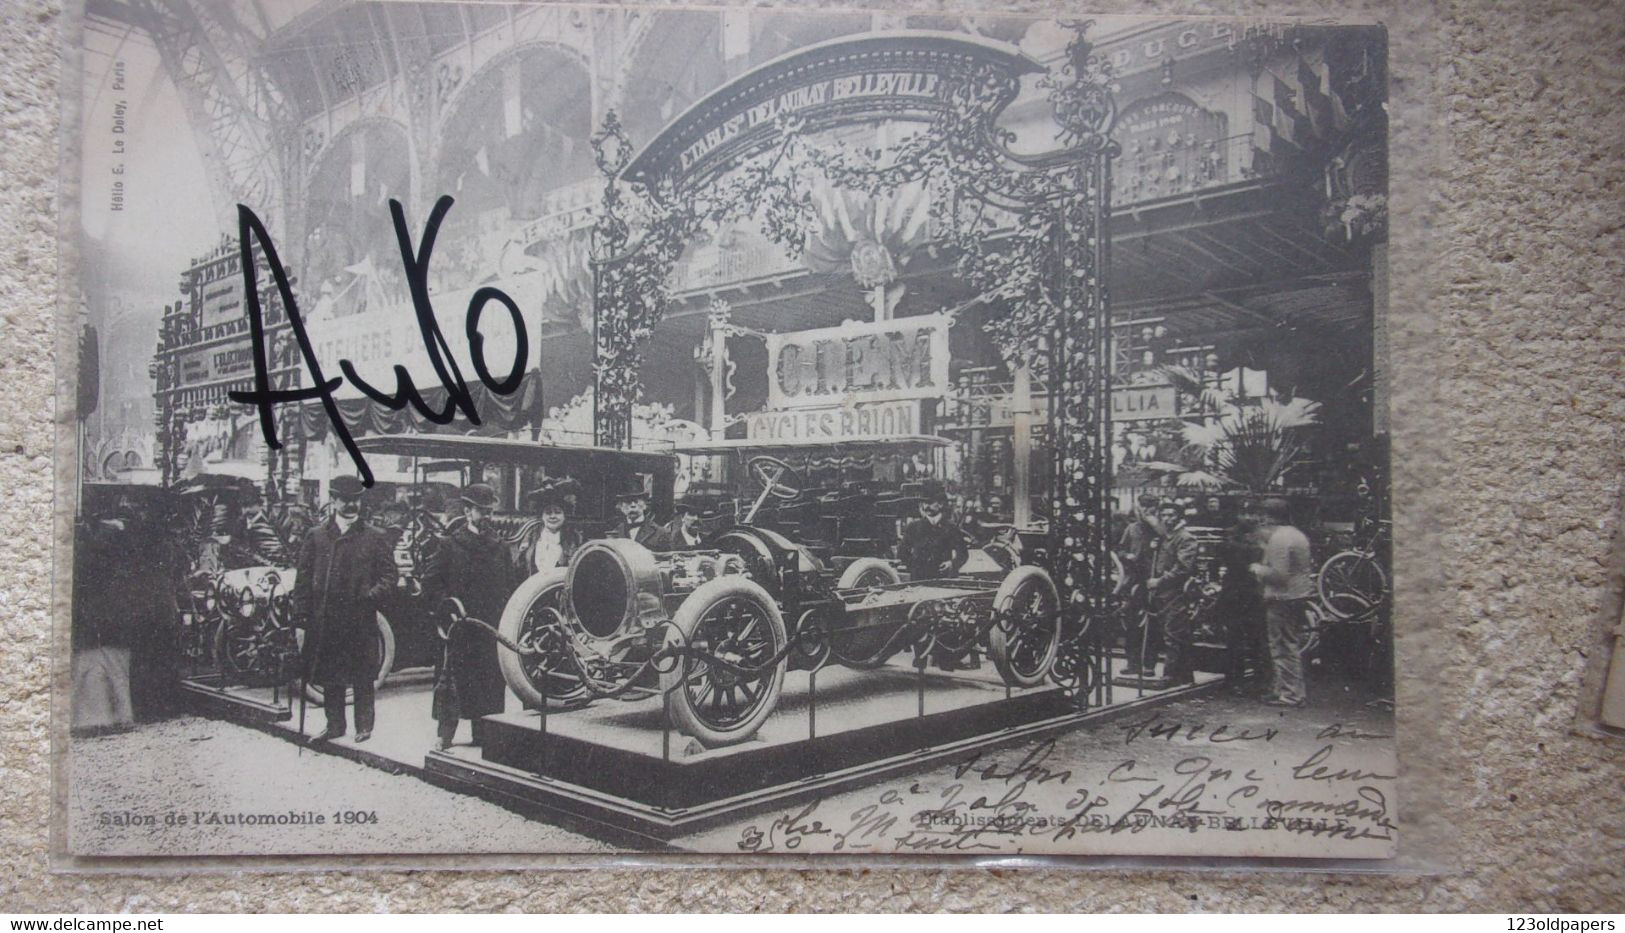 ♥️ SALON DE L AUTOMOBILE 1904 DELAUNAY BELLEVILLE CIEM CYCLES BRION - Voitures De Tourisme